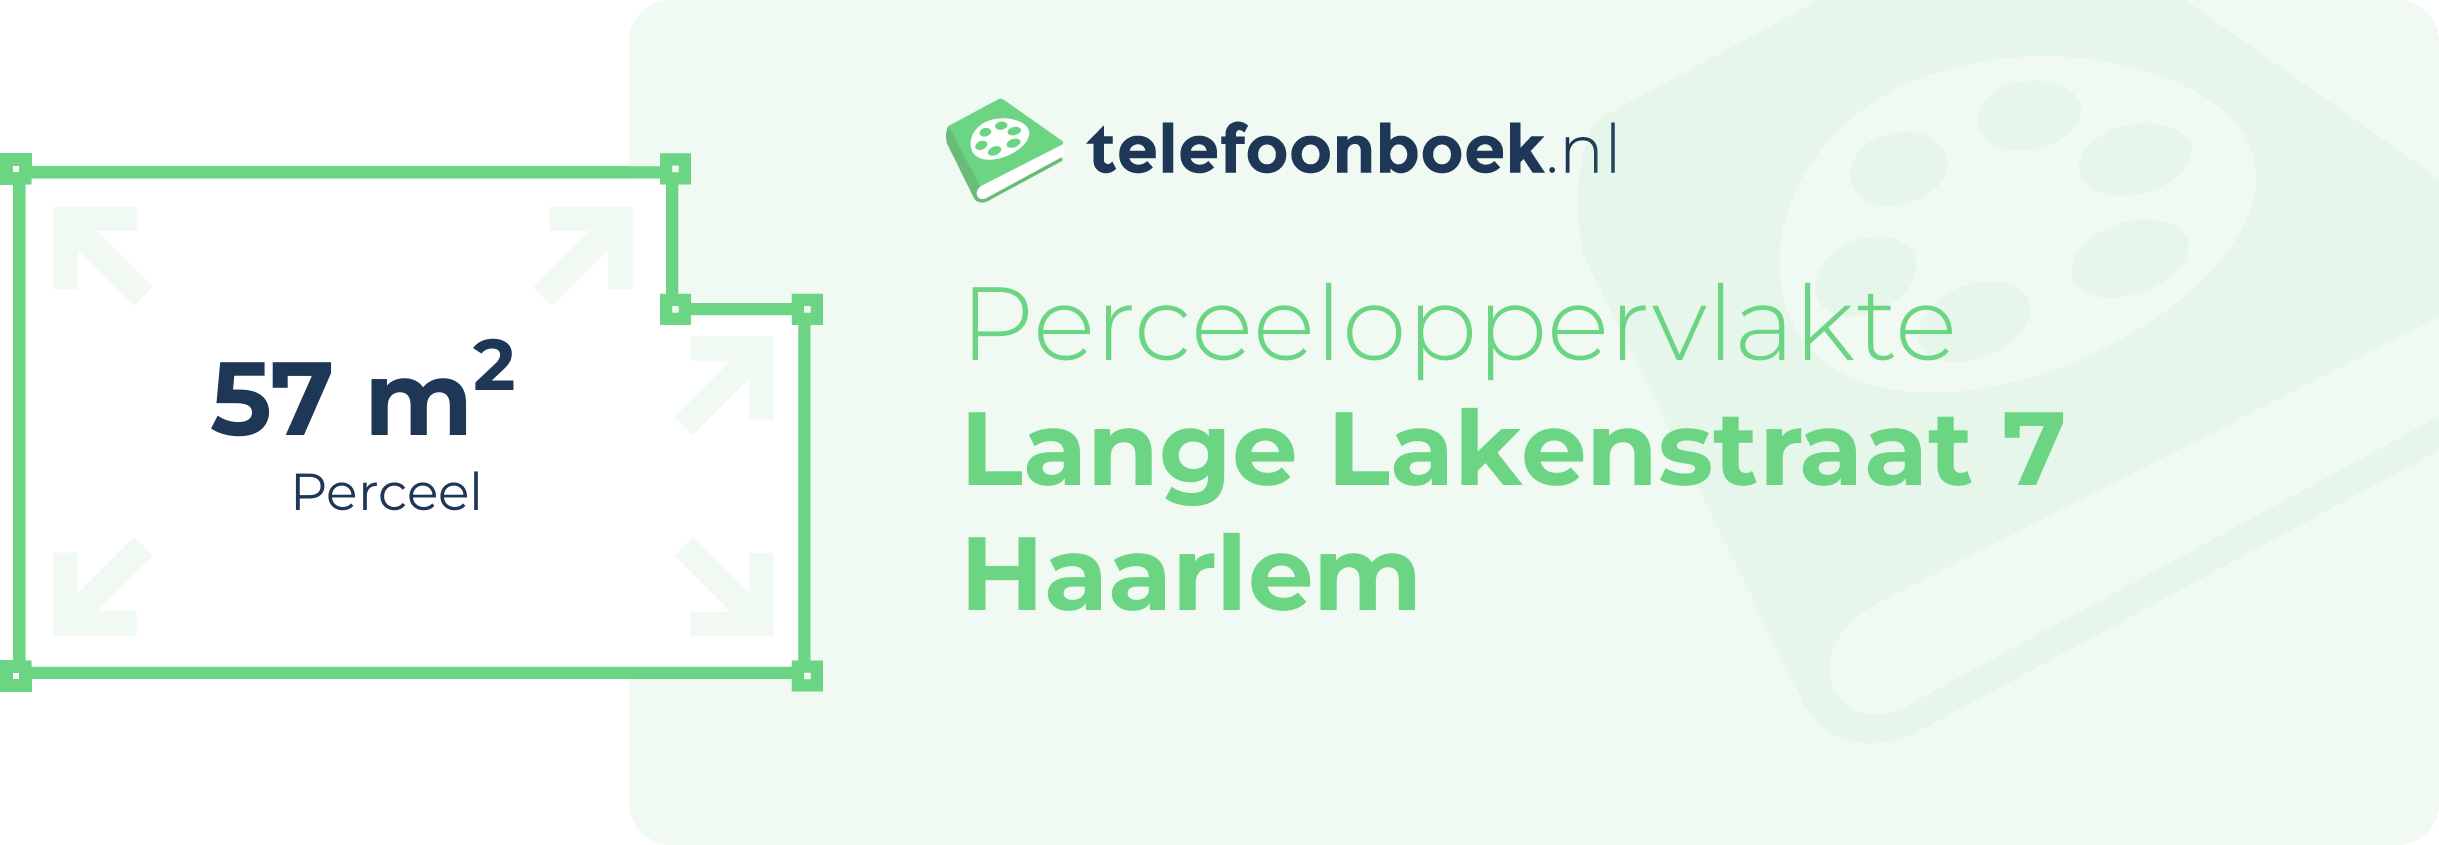 Perceeloppervlakte Lange Lakenstraat 7 Haarlem